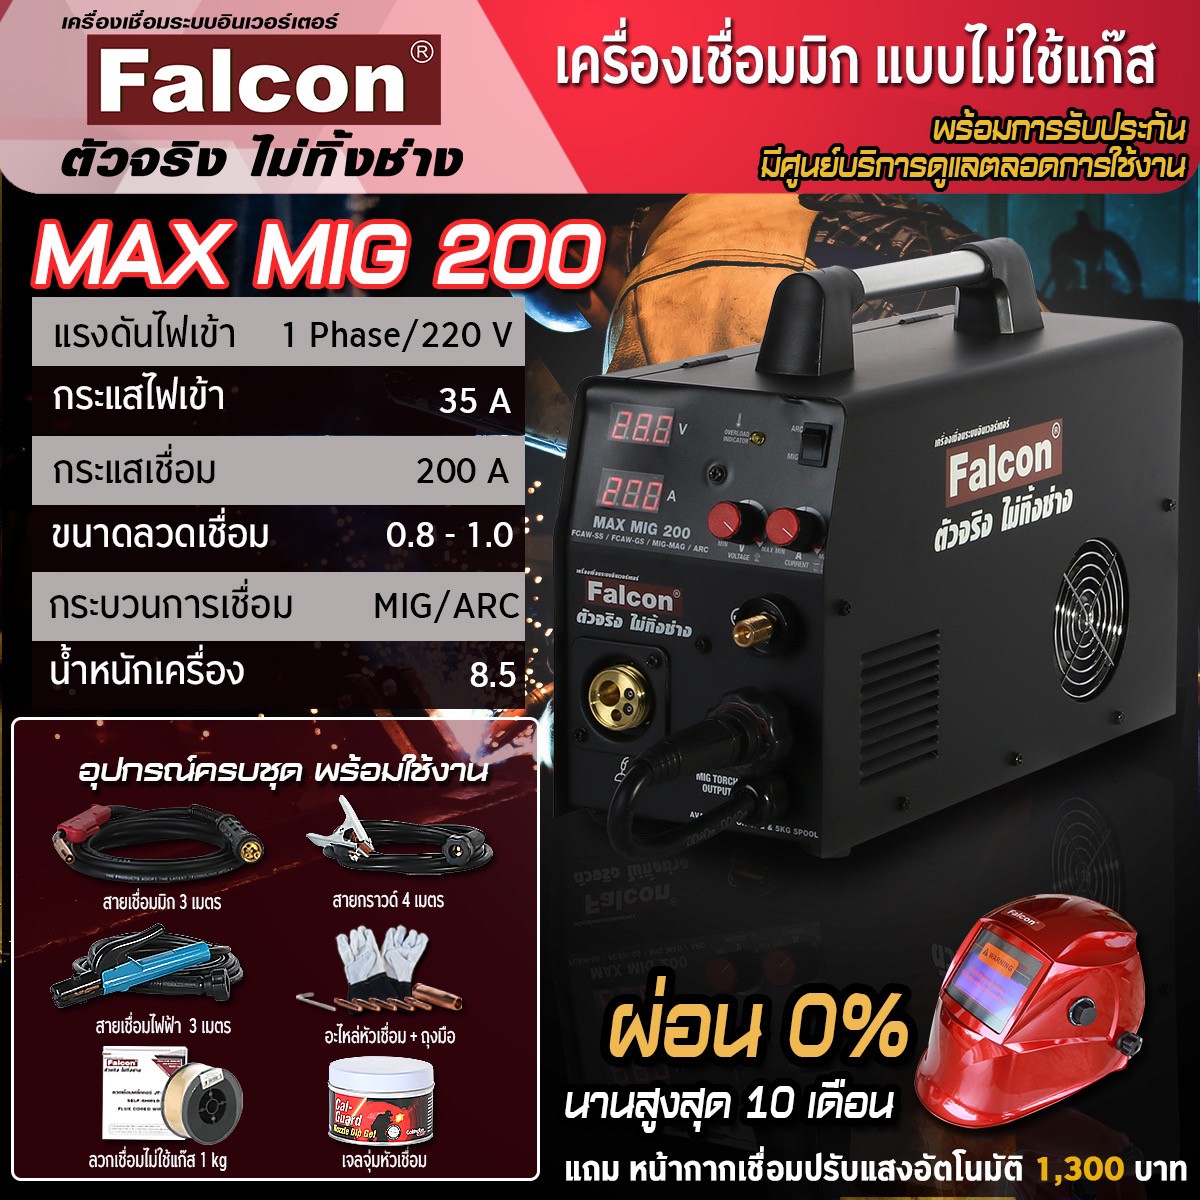 ตู้เชื่อม Falcon MAX MIG 200 ซีโอทู Mig200 เครื่องเชื่อมไฟฟ้าแบบไม่ใช้แก๊ส เครื่องเชื่อมซีโอทู เครื่องเชื่อมมิก อุปกรณ์งานเชือม